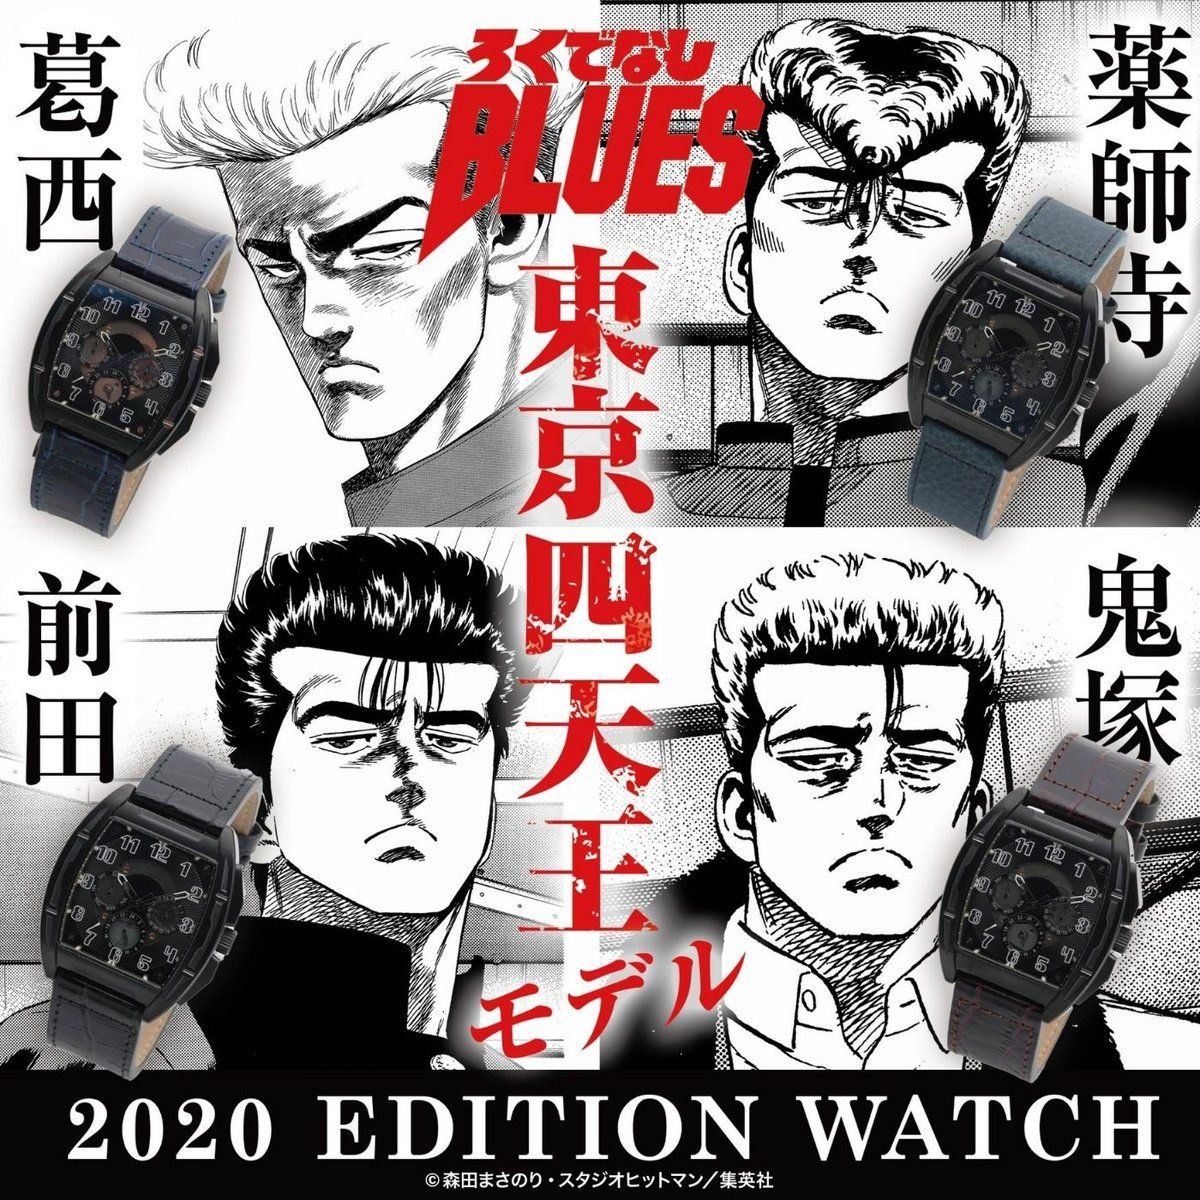 ろくでなしblues 2020 Edition Watch 趣味 コレクション プレミアムバンダイ公式通販